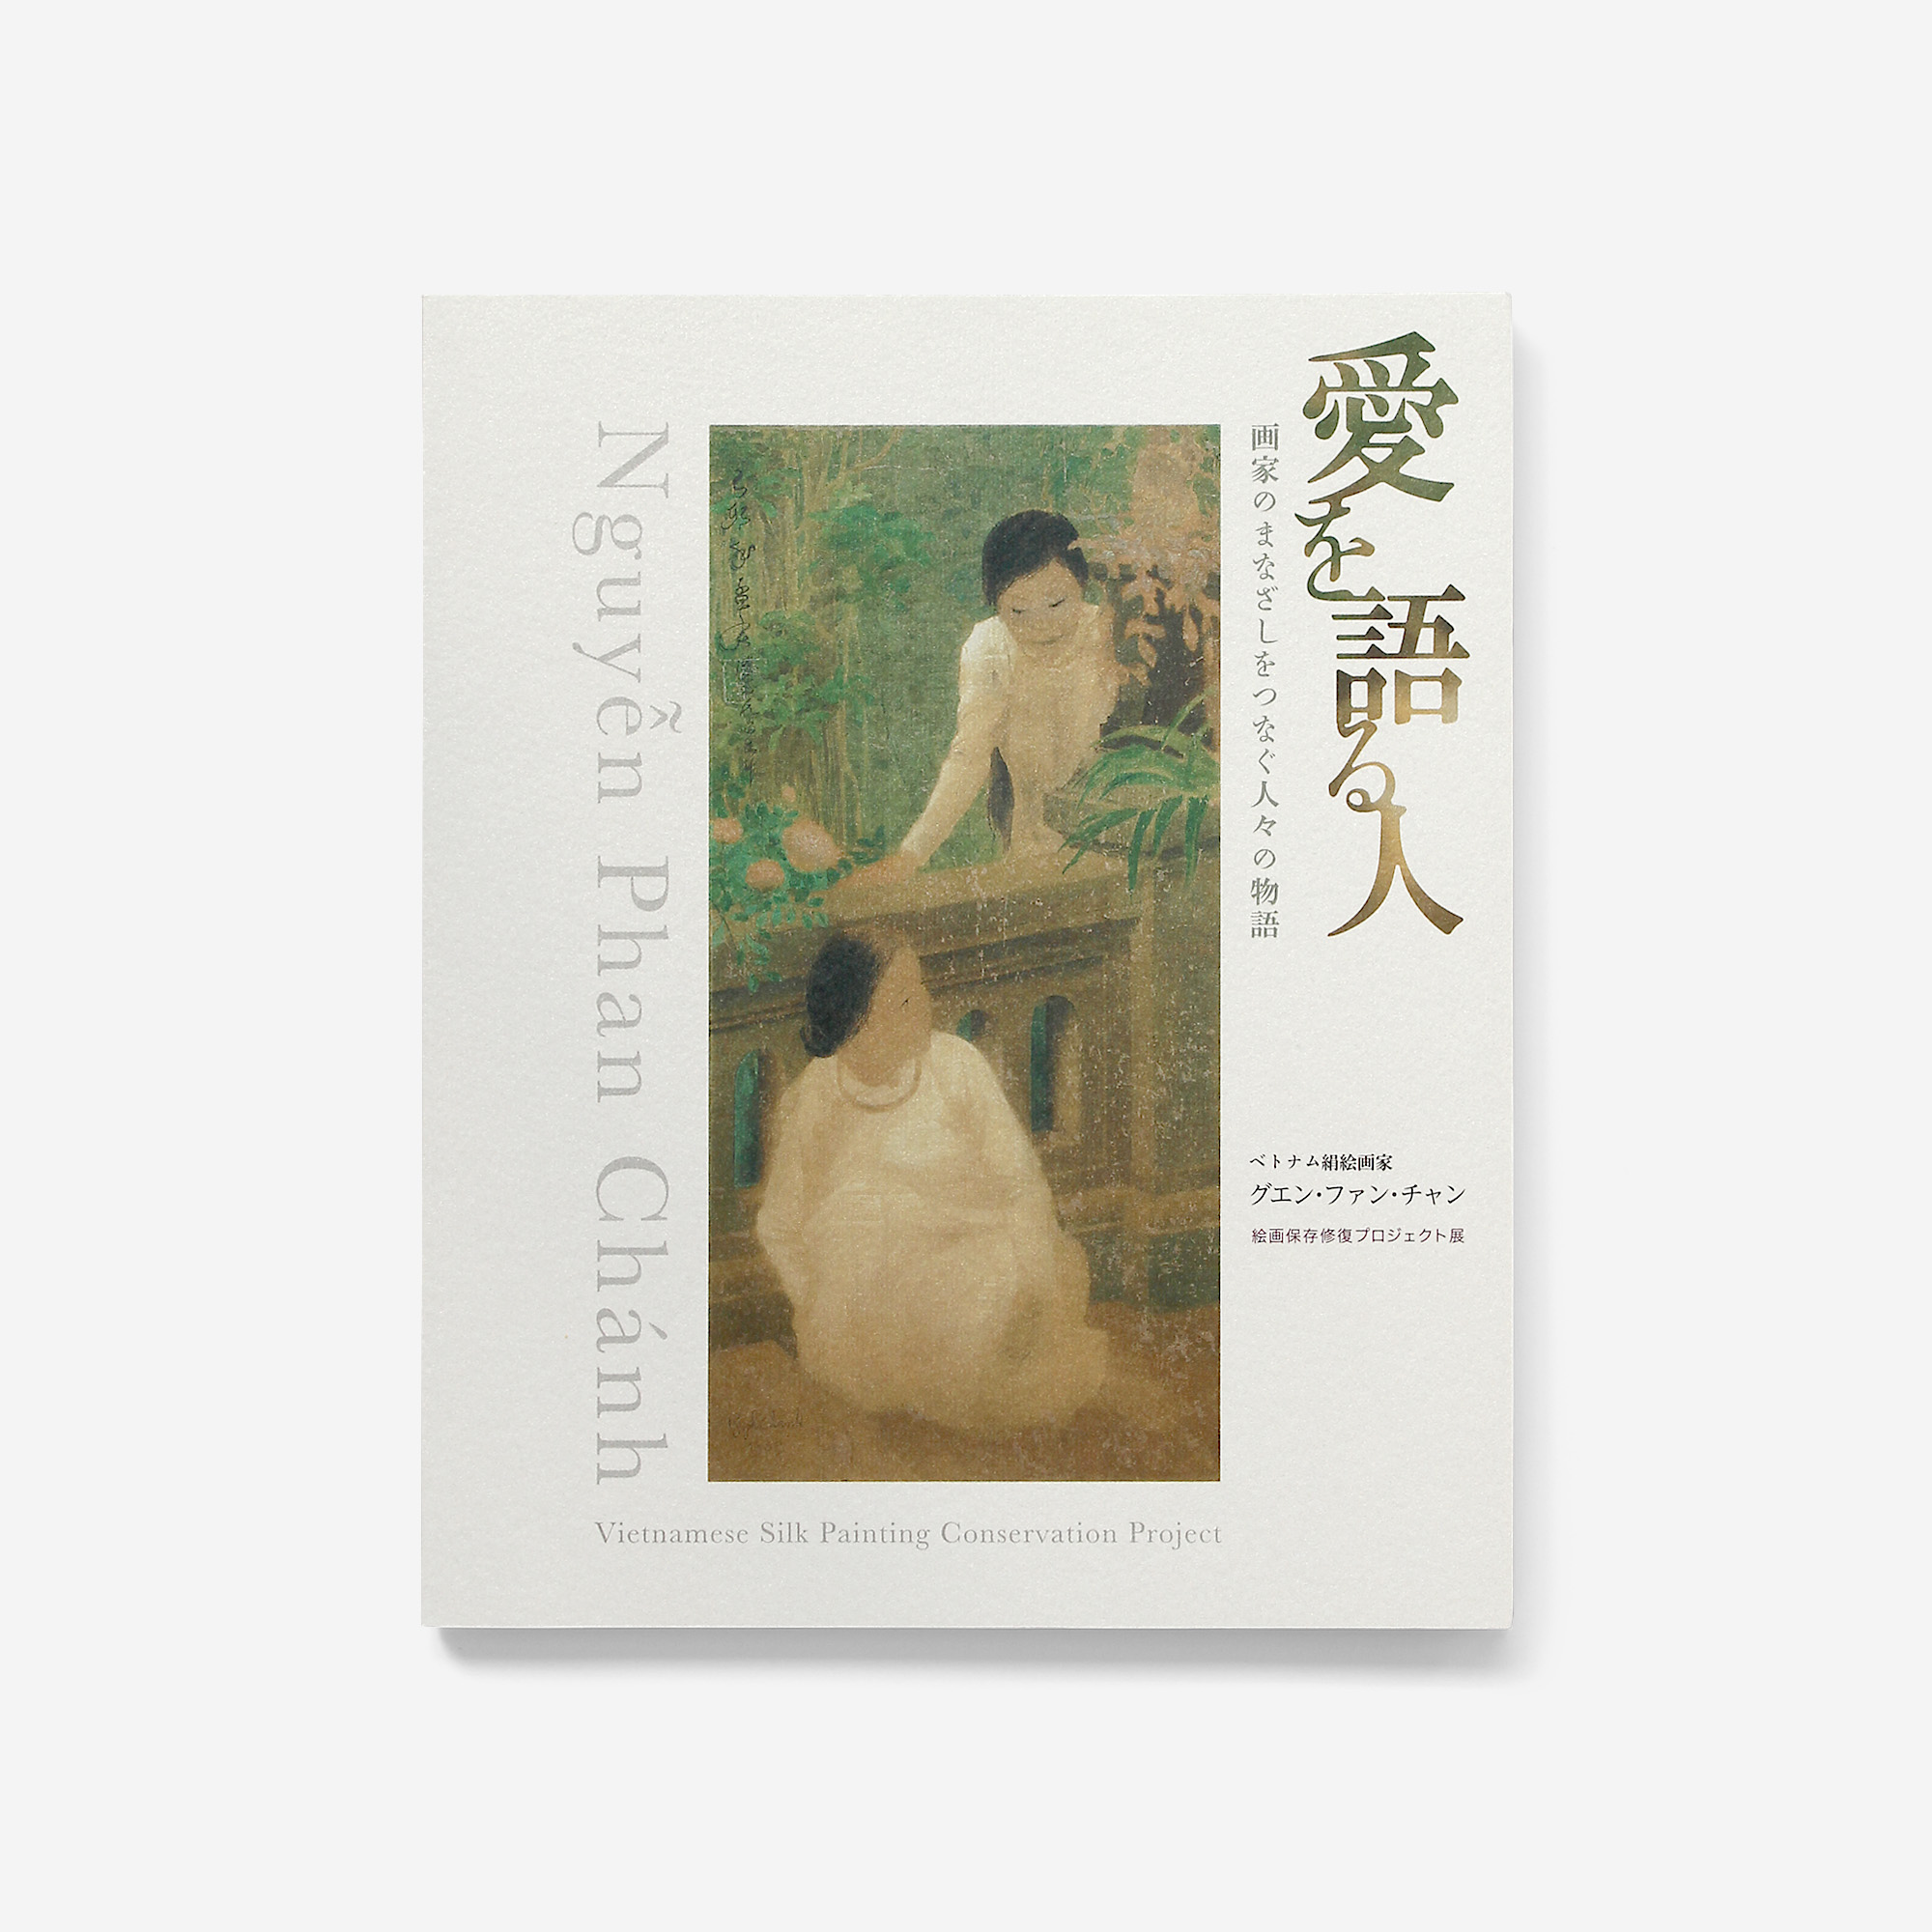 ベトナム絹絵画家グエン・ファン・チャン 絵画保存修復プロジェクト展 